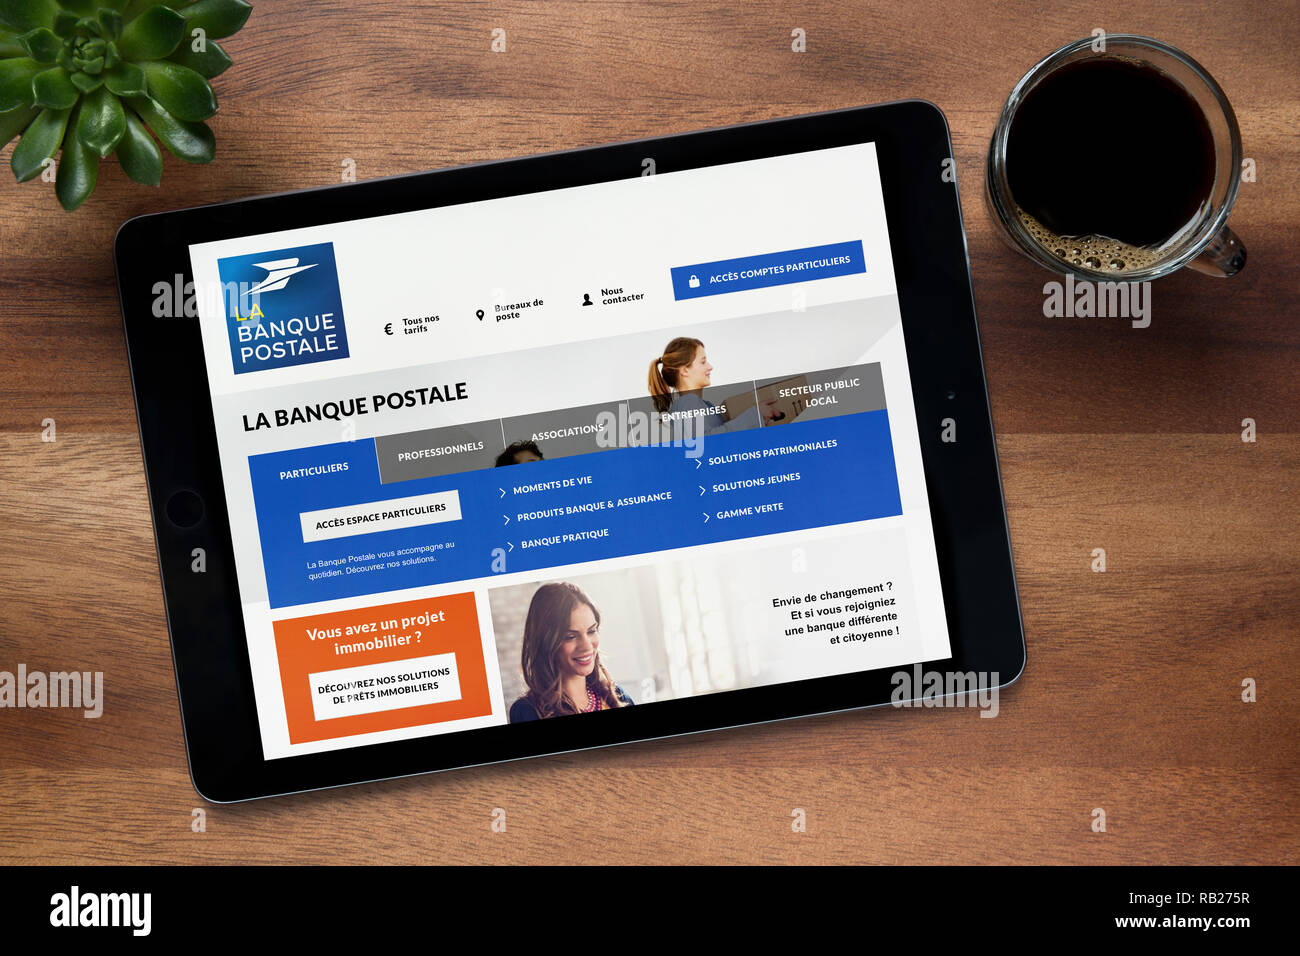 Le site internet de La Banque Postale est vu sur un iPad tablet, qui repose  sur une table en bois (usage éditorial uniquement Photo Stock - Alamy